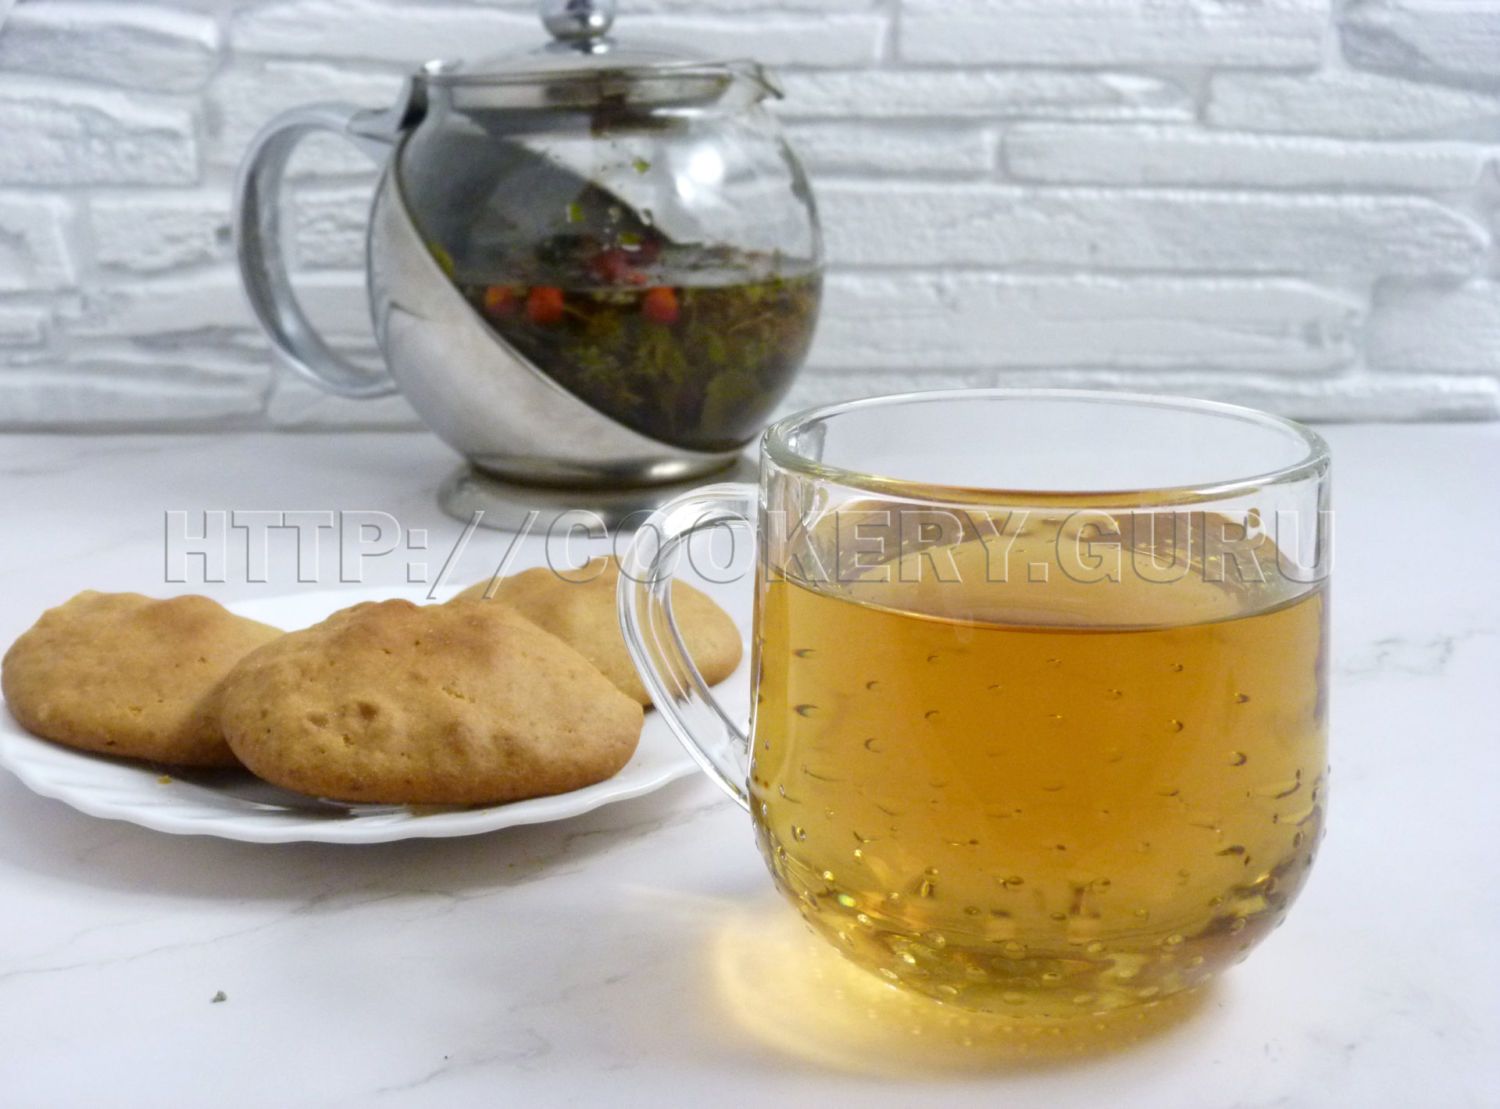 травяной чай, фиточай, травы для чая, травы вместо чая, какие травы вместо чая, пить травы вместо чая, какие травы пить вместо чая, какие травы можно пить вместо чая, травяной напиток, какая трава для чая, какие травы можно для чая, рецепты травяных чаев, чай травяной сбор, какие травы смешивать для чая, какие травы можно смешивать для чая, чайный напиток травяной, польза травяных чаев, вкусный травяной чай, полезные травы для чая, как заваривать травяной чай, травы для заваривания чая, трава собранная для чая, чай из трав своими руками, травяной чай своими руками рецепты, сочетание трав для чая, какие травы собирают для чая, собрать чай из трав самому